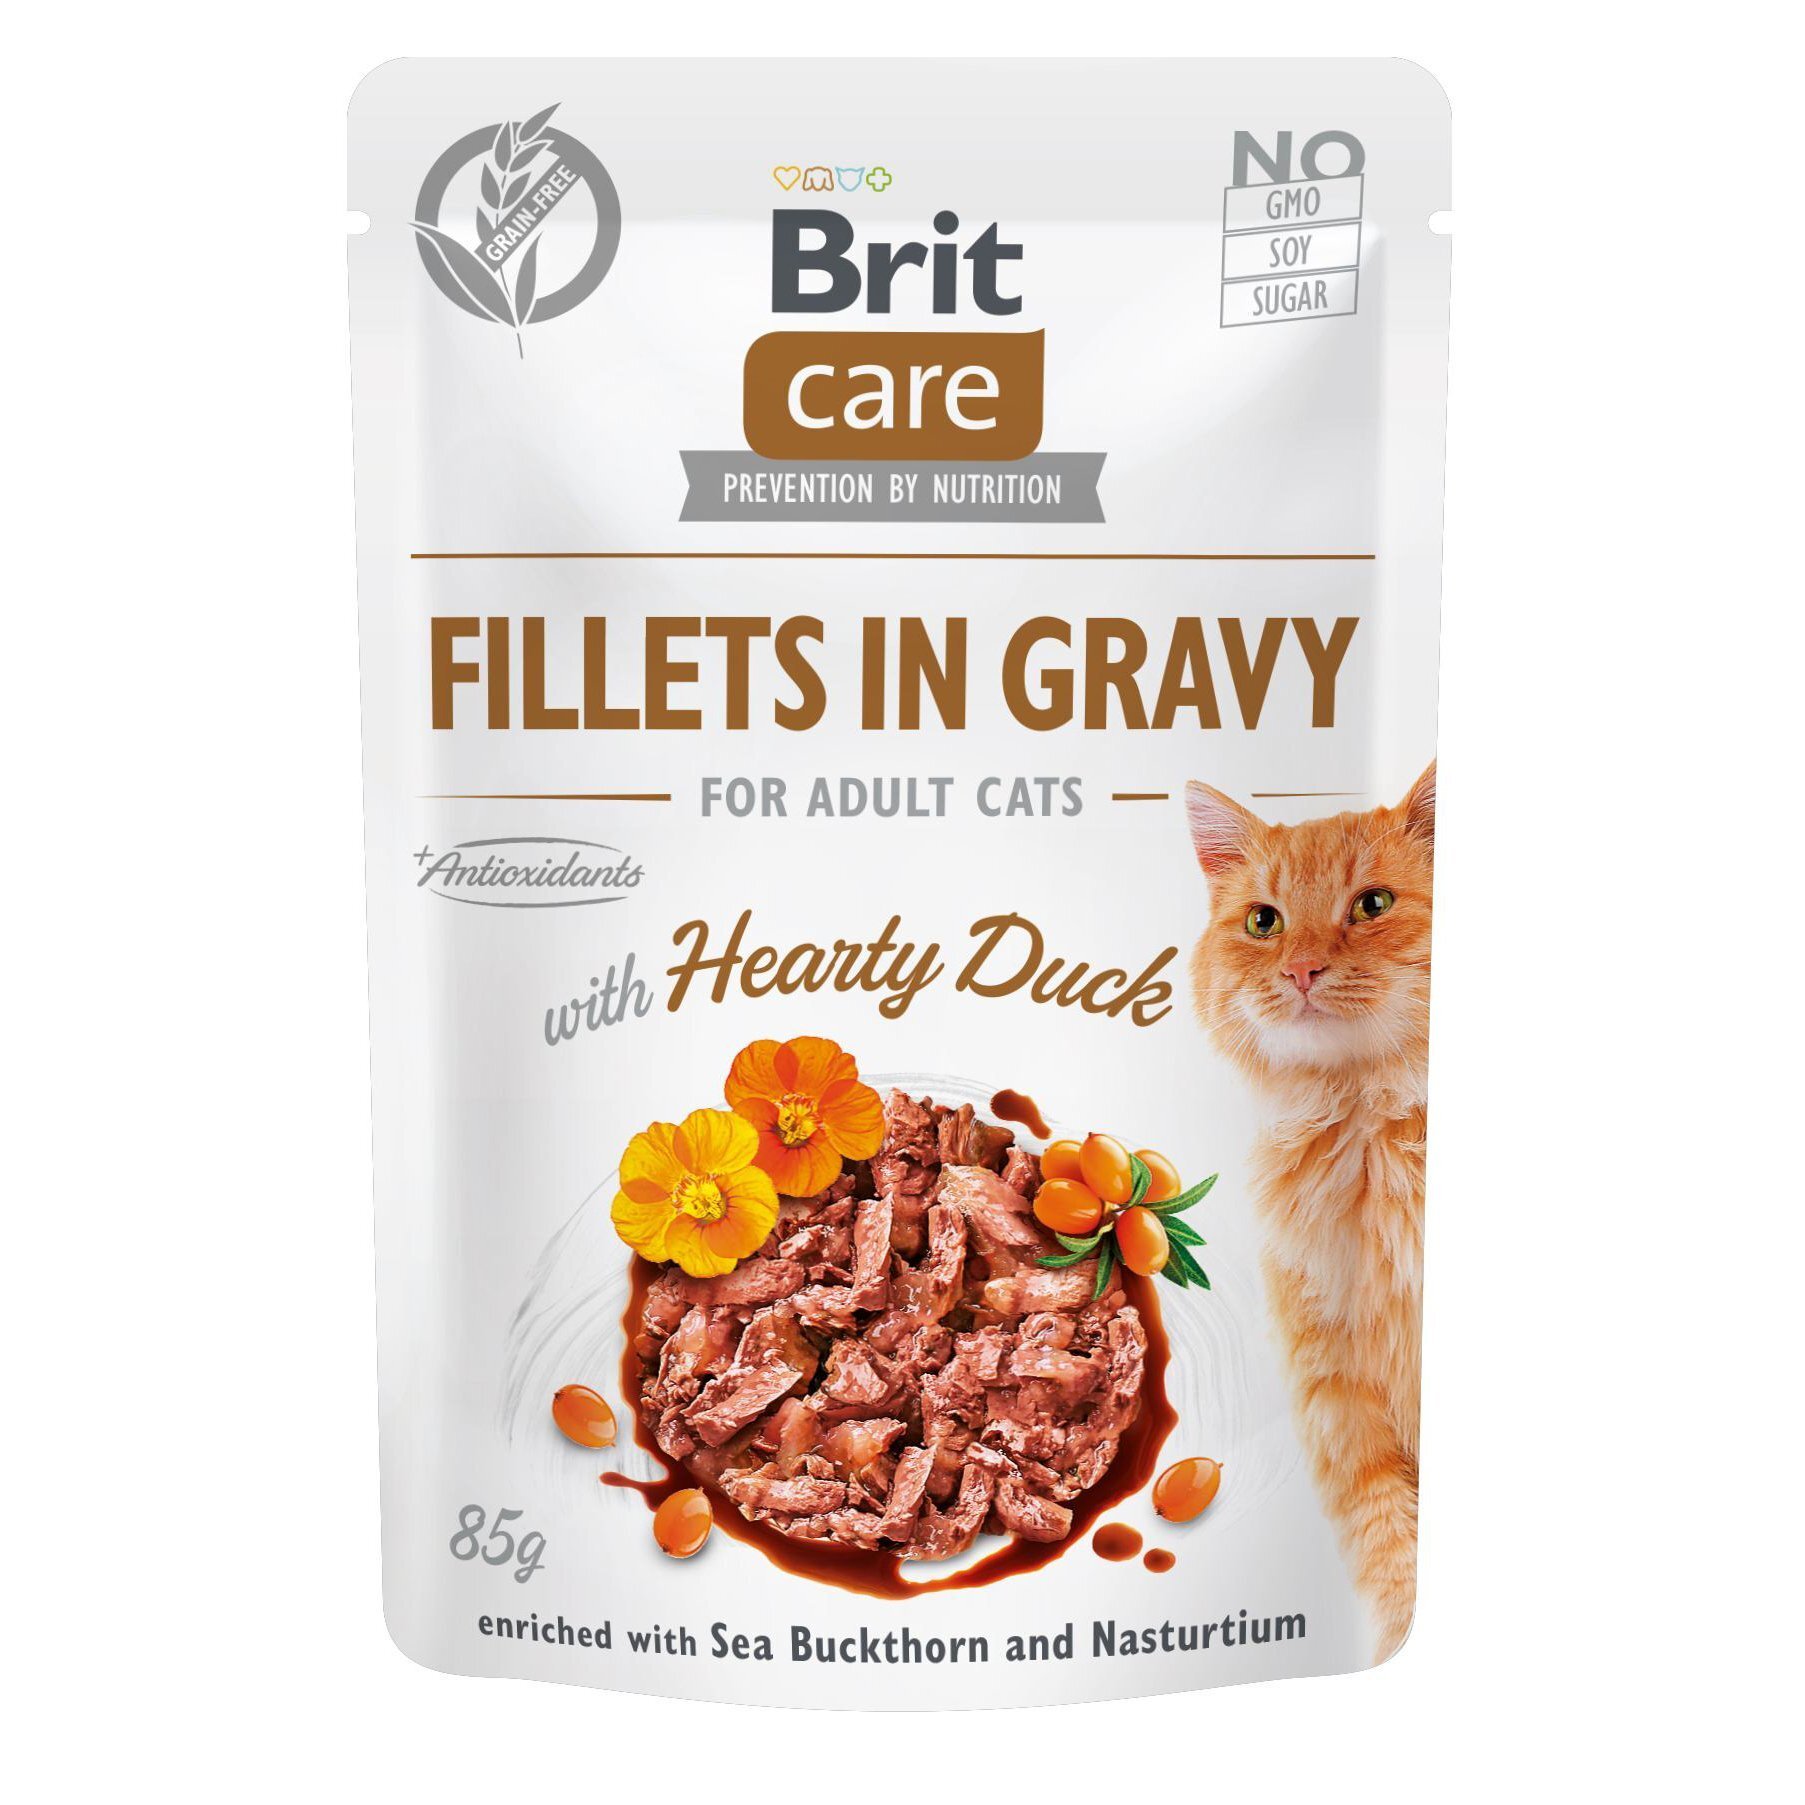 Влажный корм для кошек Brit Care Cat pouch 85г филе в соусе с уткой фото 1